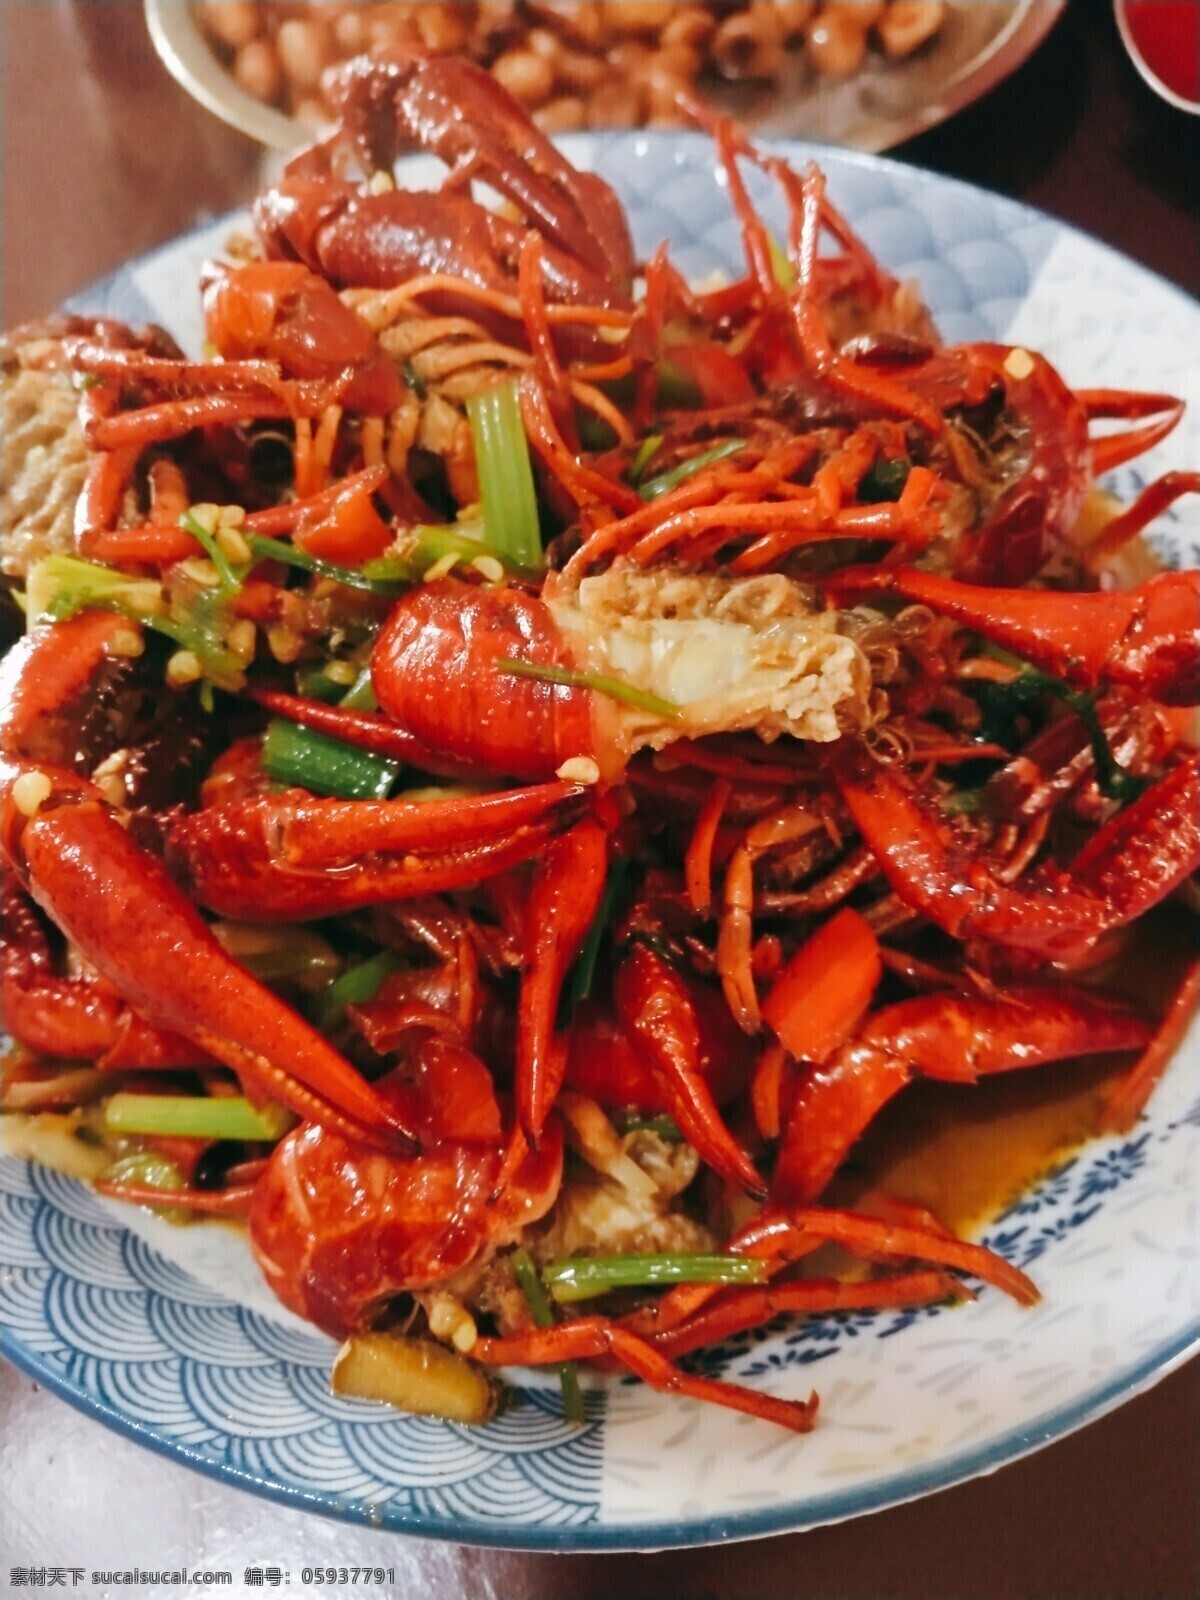 一盘龙虾 美食 龙虾 辣味 红色 盘装 食物 餐饮美食